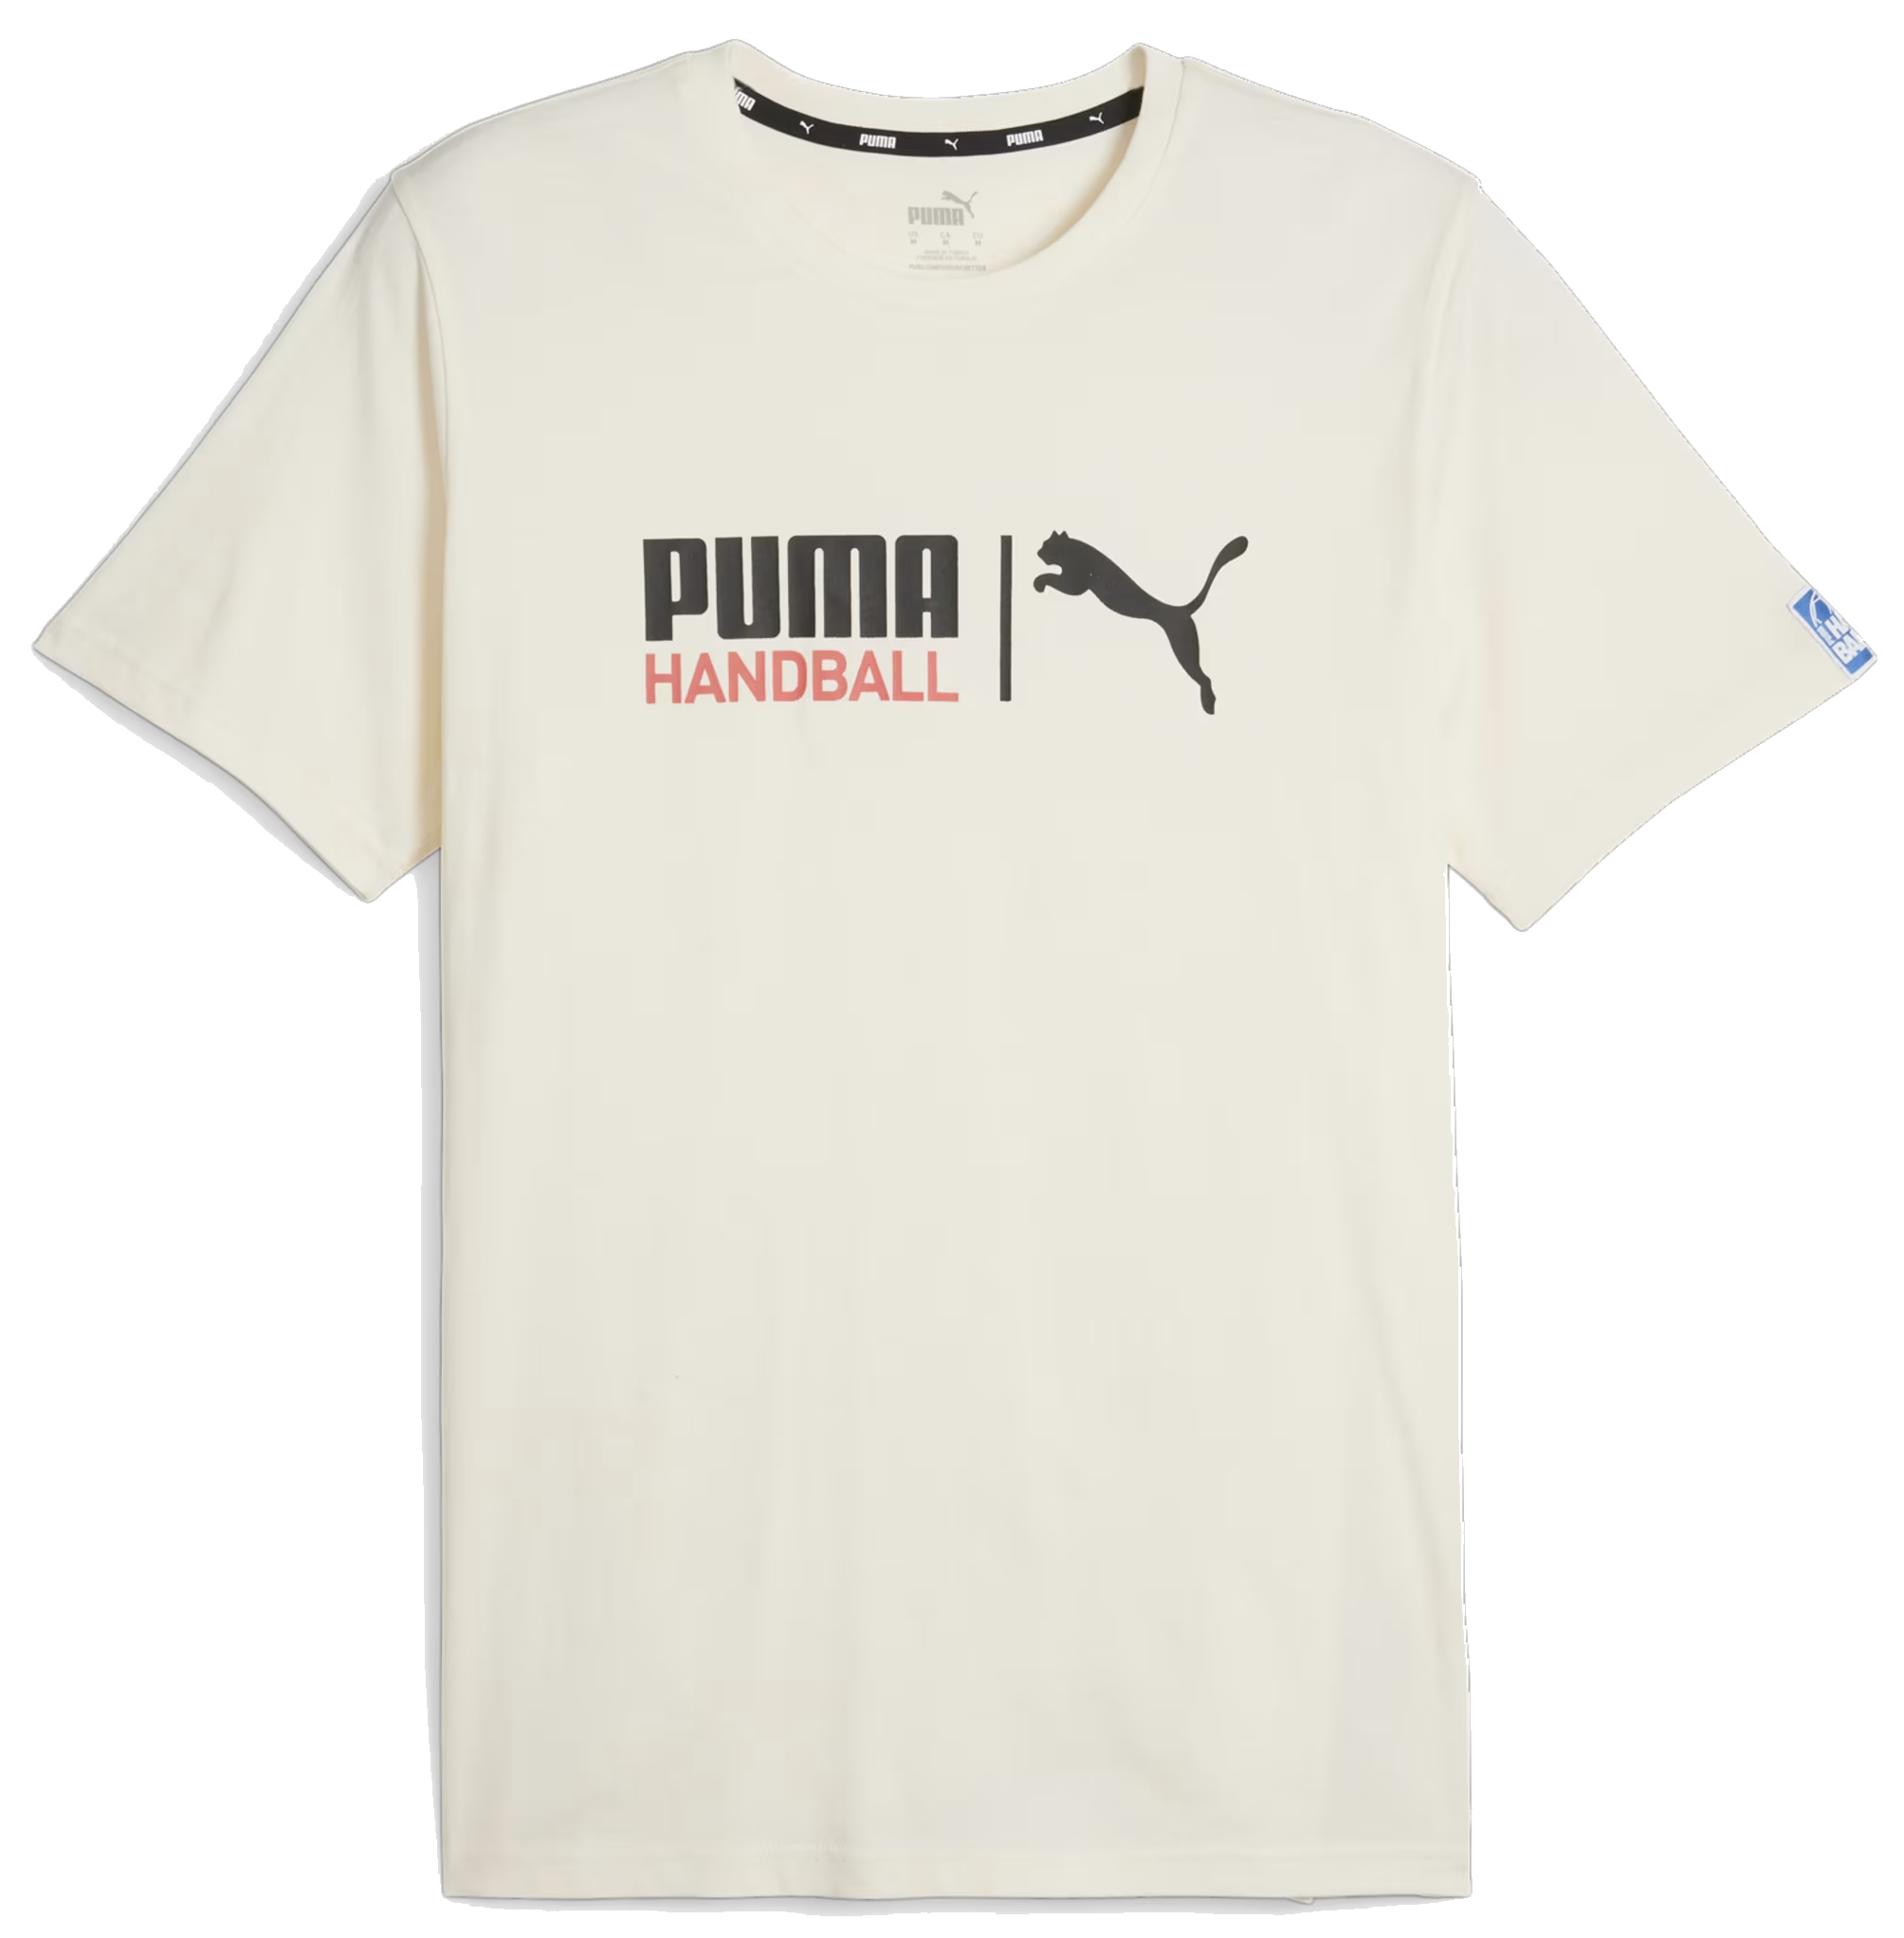 T-shirt Puma Handball